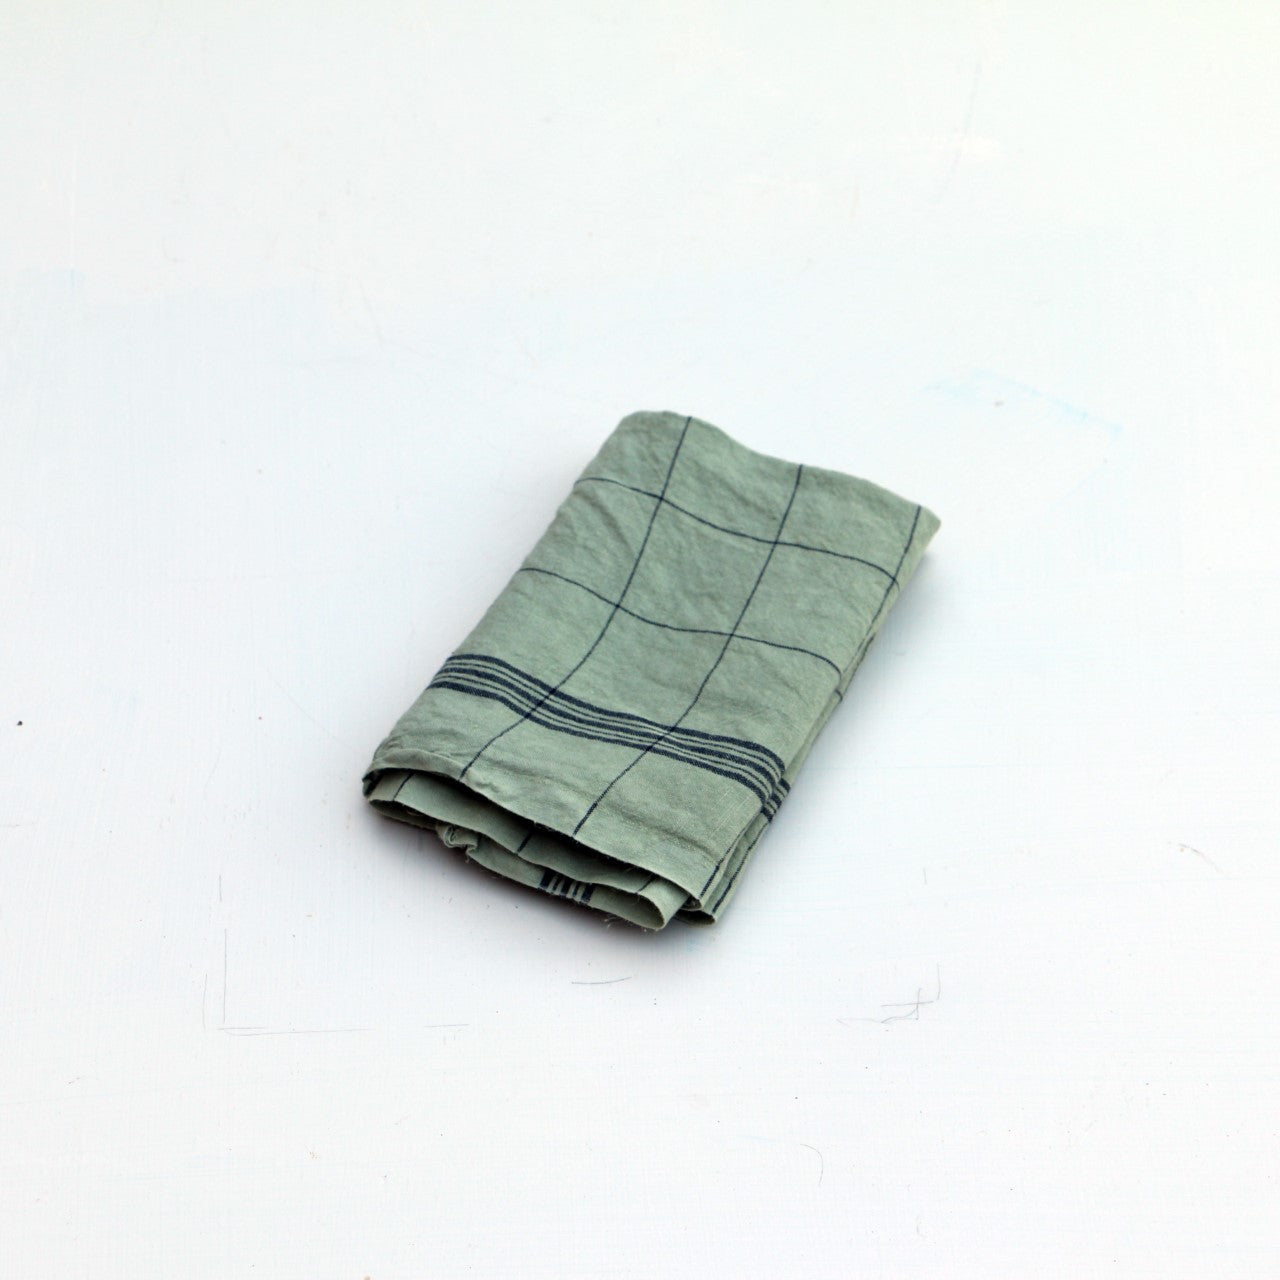 Linen tea towel: Checked green